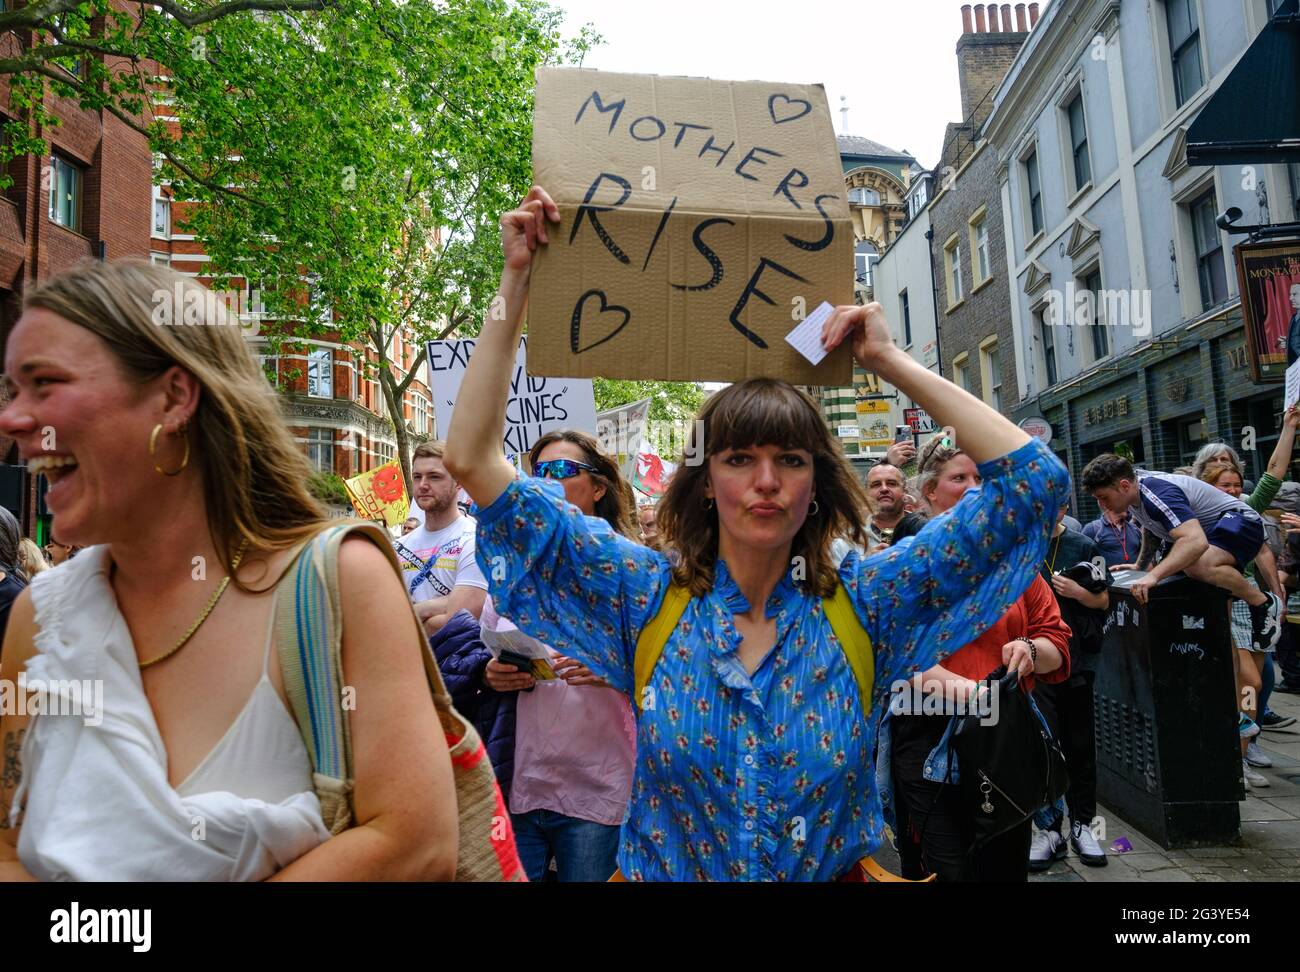 Les manifestants anti-VAX se manifestent dans le centre de Londres pour protester contre les mesures Covid du gouvernement, notamment les passeports de vaccination et les restrictions à l'ouverture du confinement.Mai 29 2021 Banque D'Images